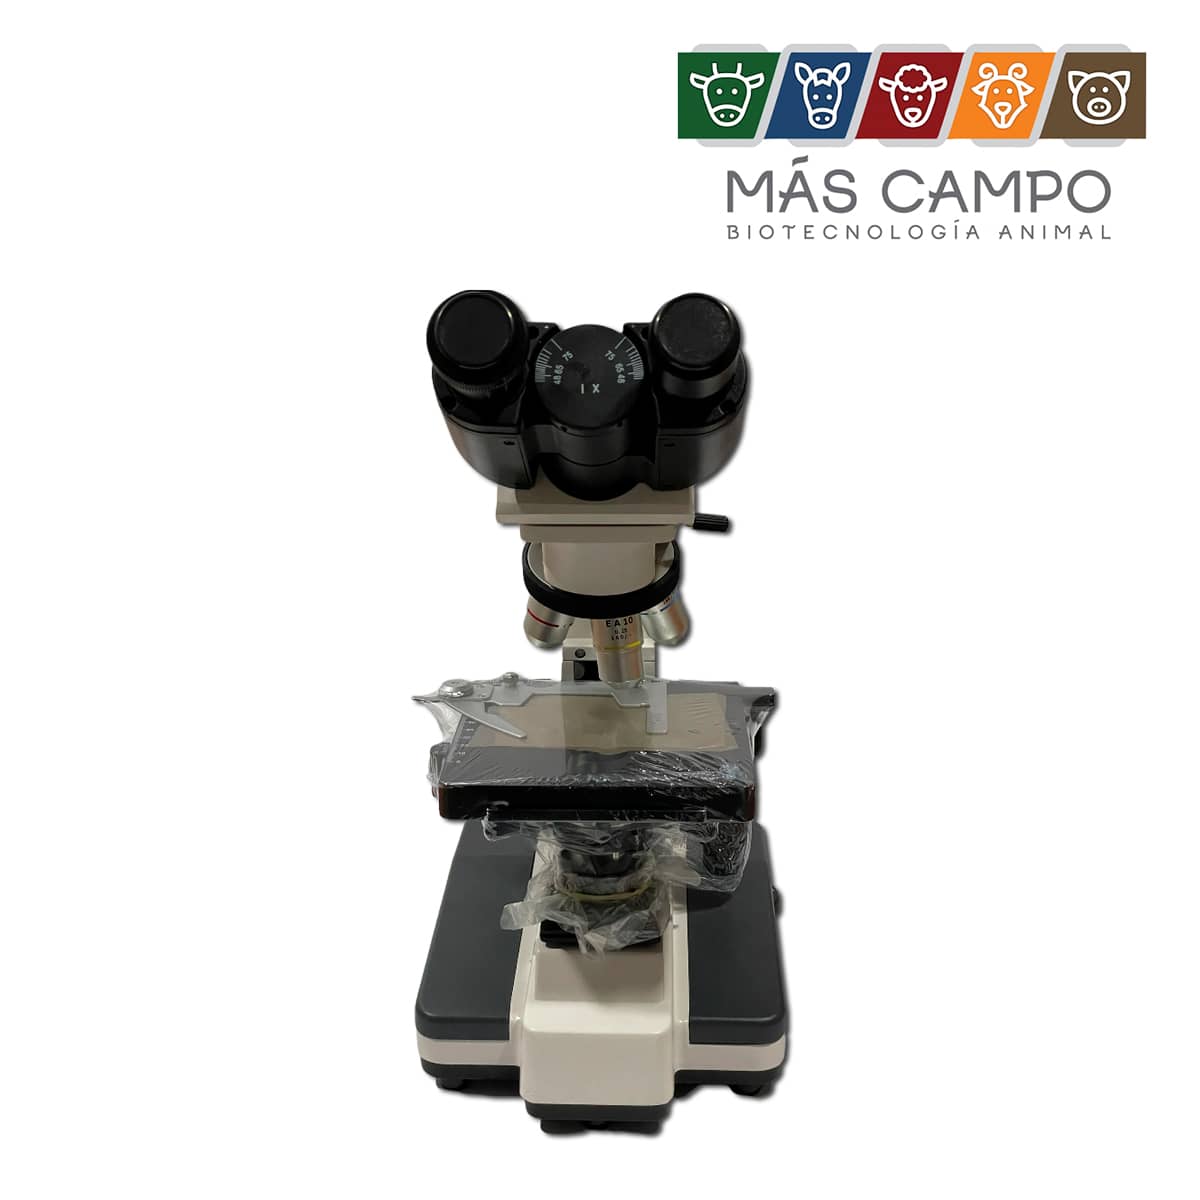 Microscopio Binocular Iluminación Kohler